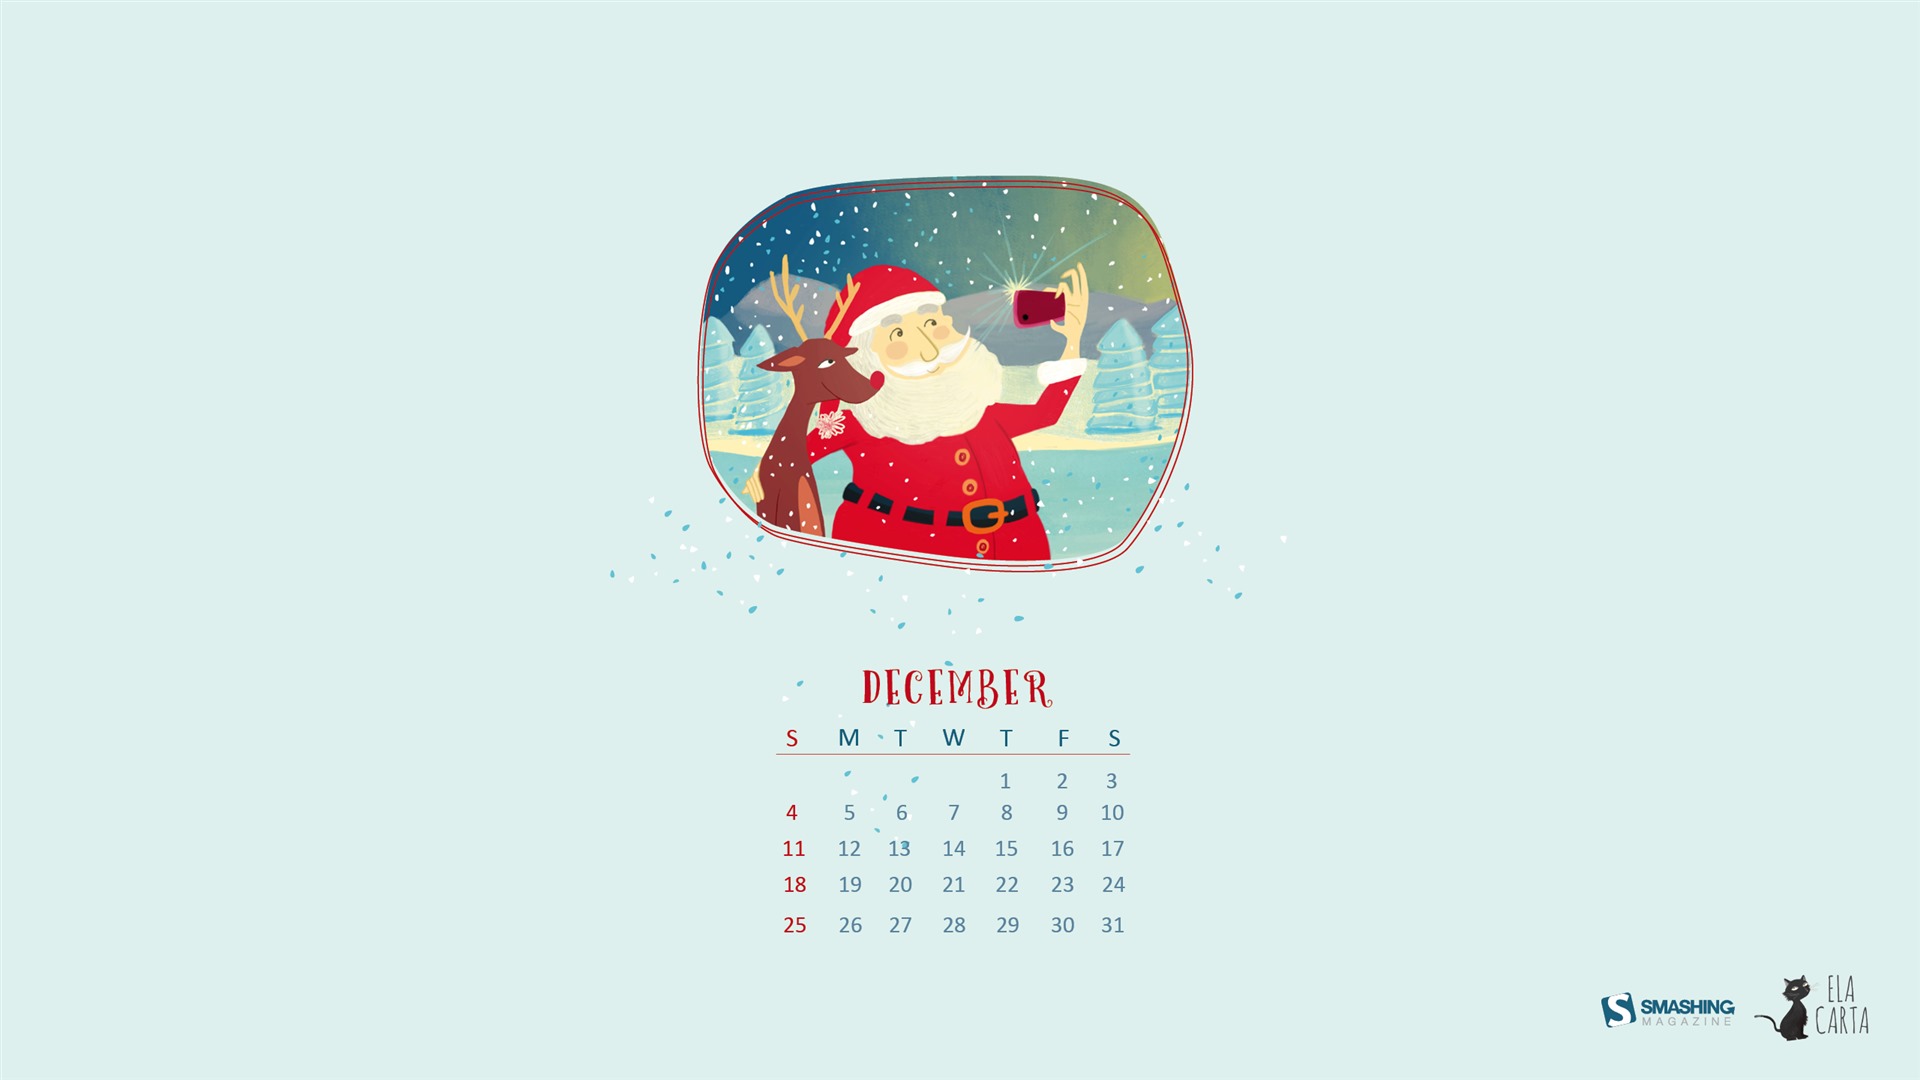 December 2016 Christmas theme calendar wallpaper (1) #15 - 1920x1080